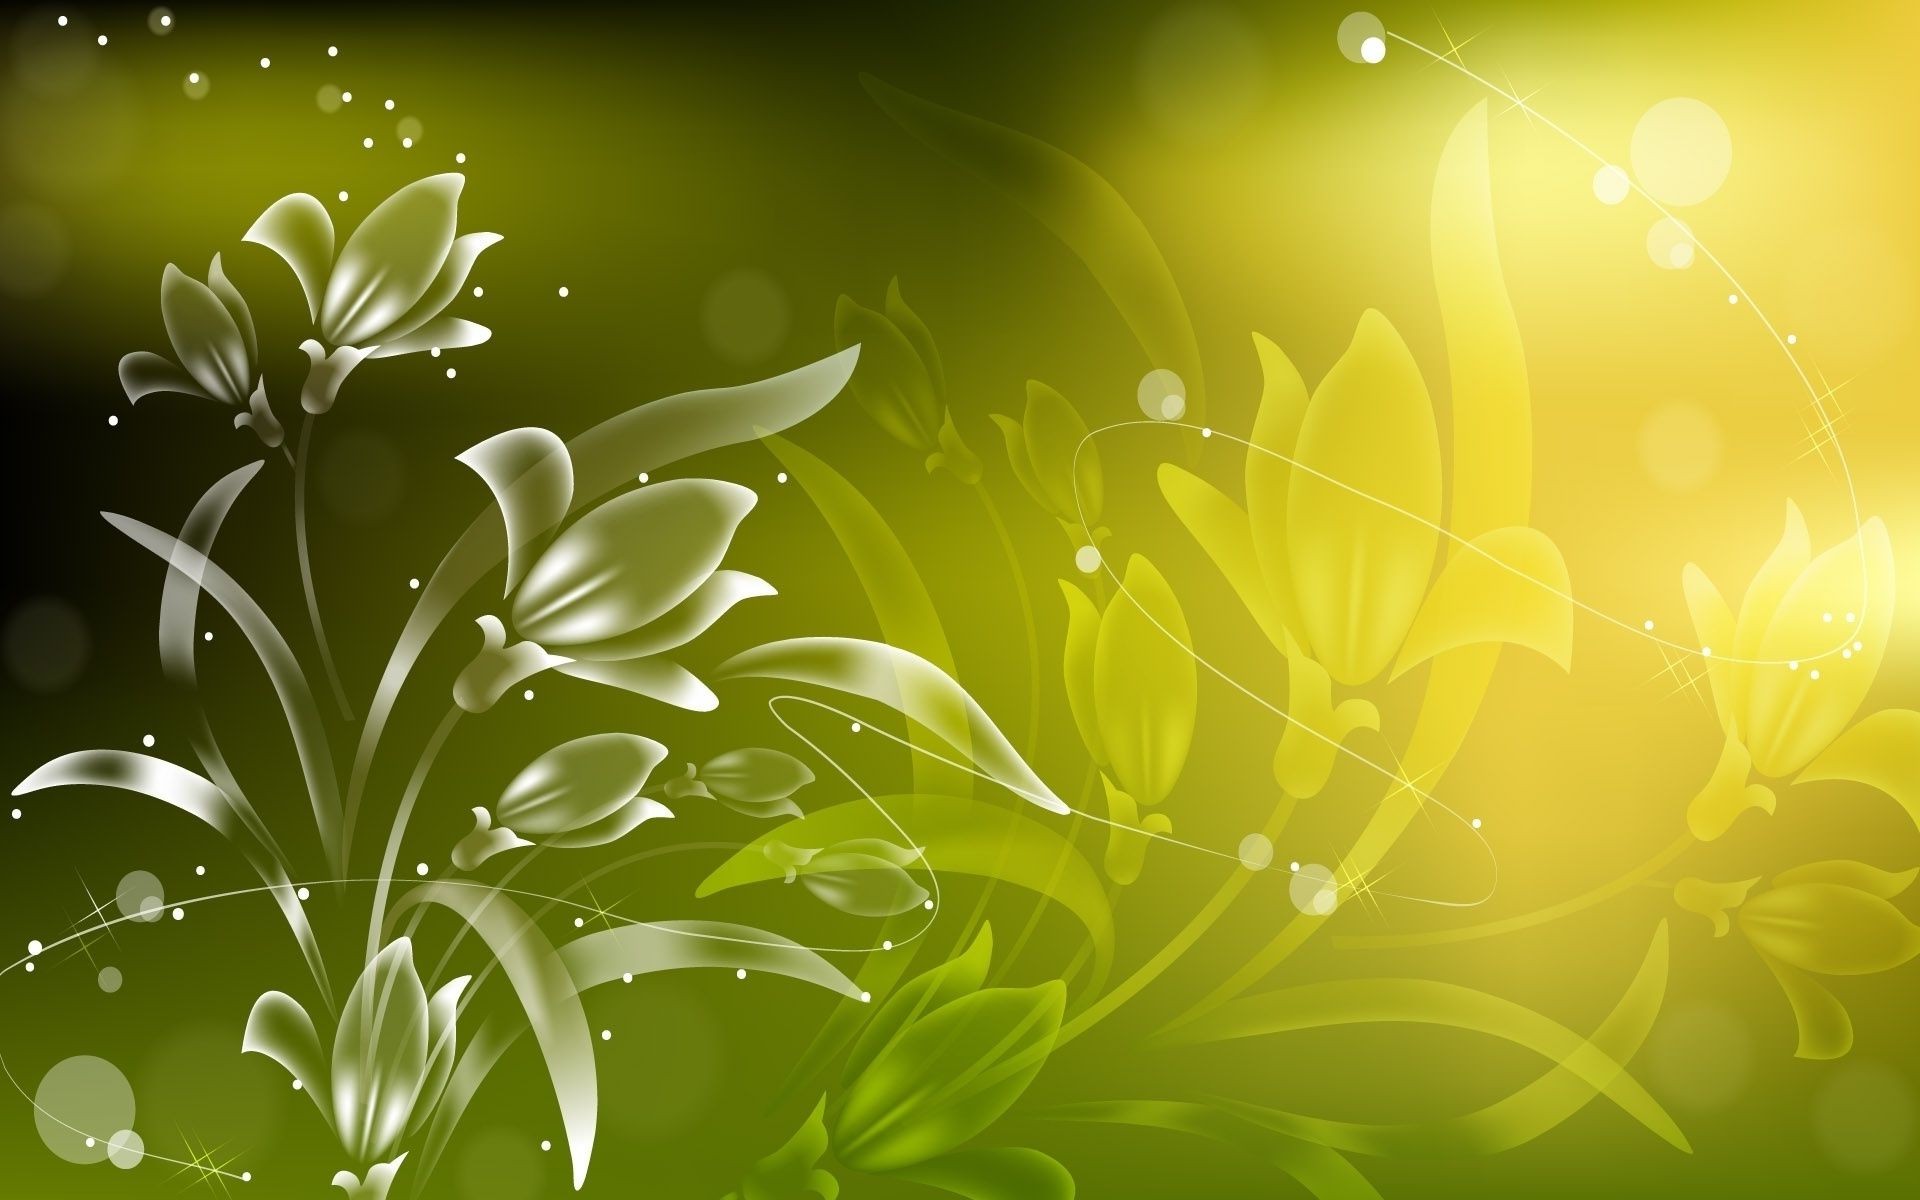 цветы лист флора рабочего стола природа аннотация иллюстрация дизайн цветочные цветок лето украшения яркий сад цвет элемент